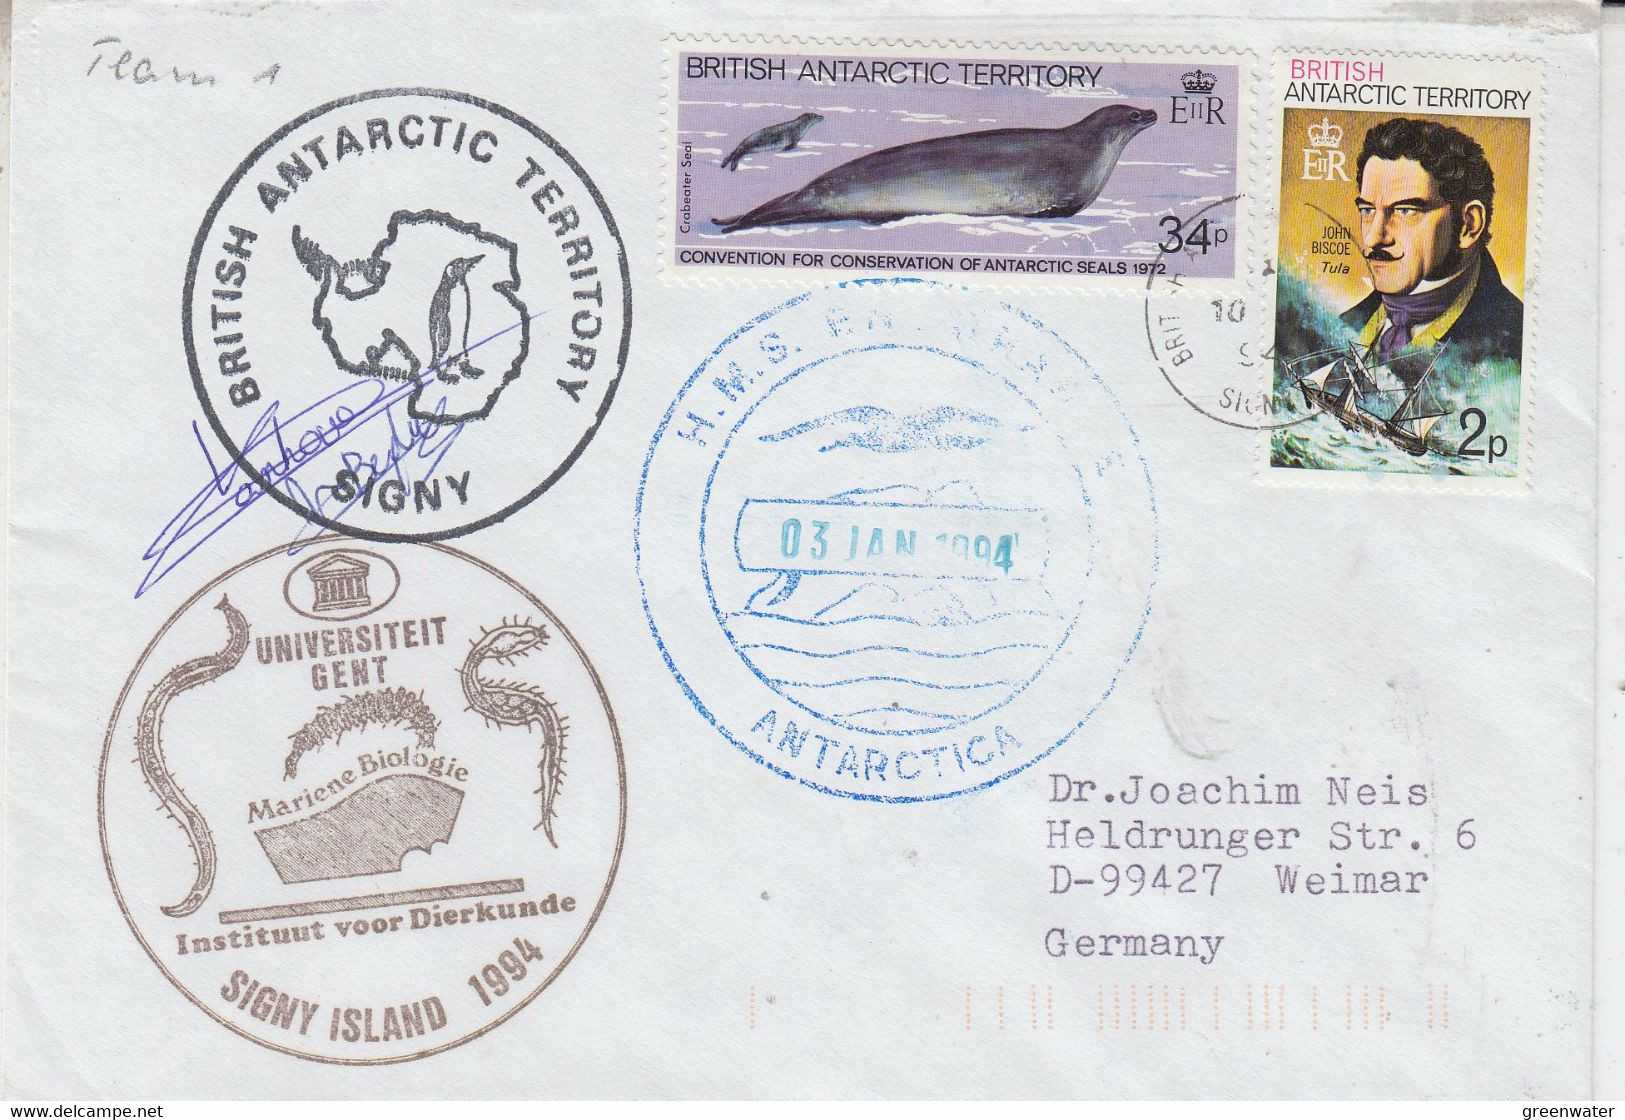 British Antarctic Territory (BAT) Ca Uniseriteit Gent 2 Signatures  Cover  Ca Signy 10 JAN 1992 (AT179) - Briefe U. Dokumente